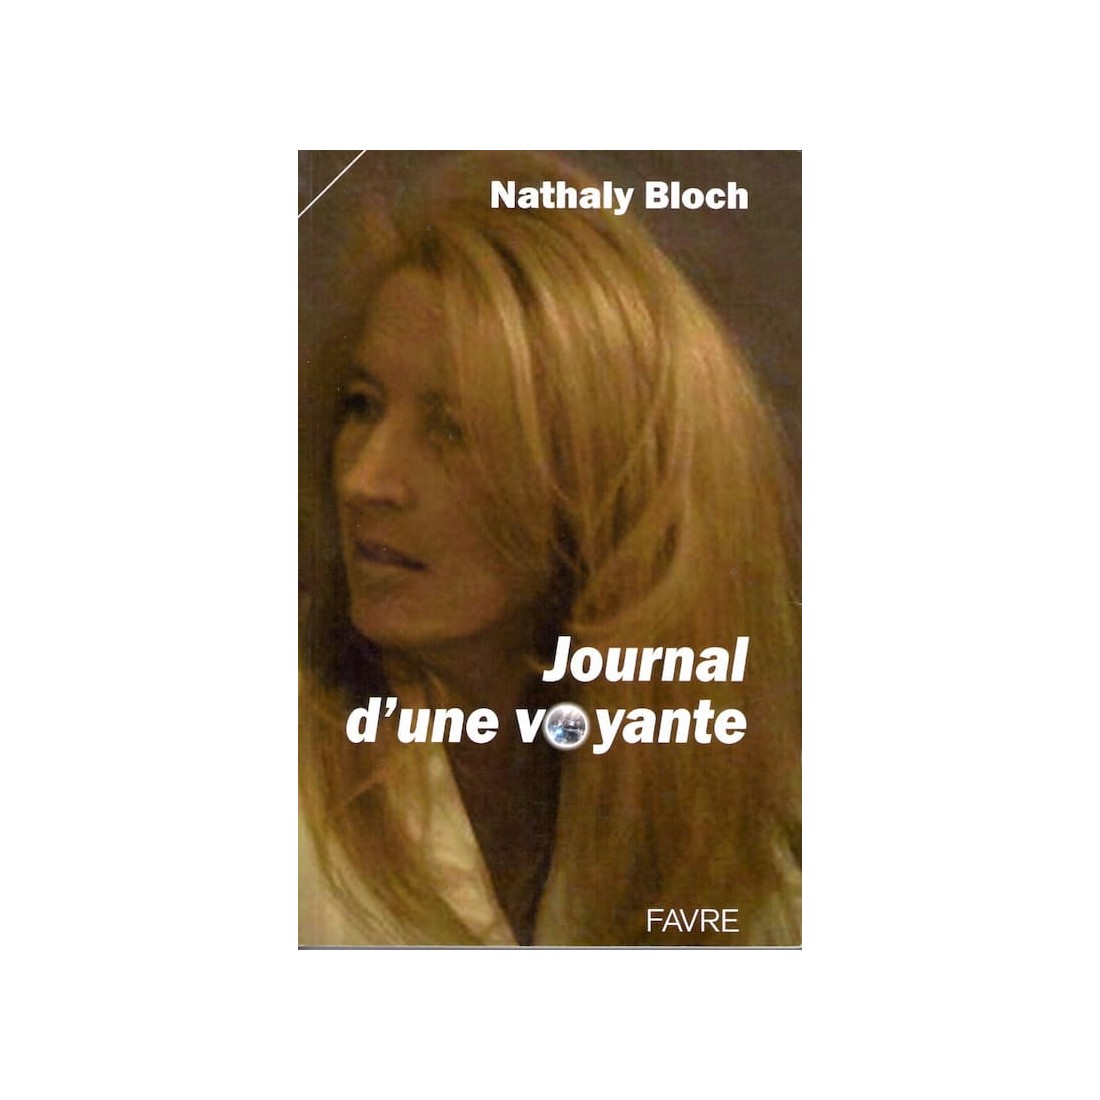 Journal d'une voyante - Roman de Nathaly Bloch - Ocazlivres.com